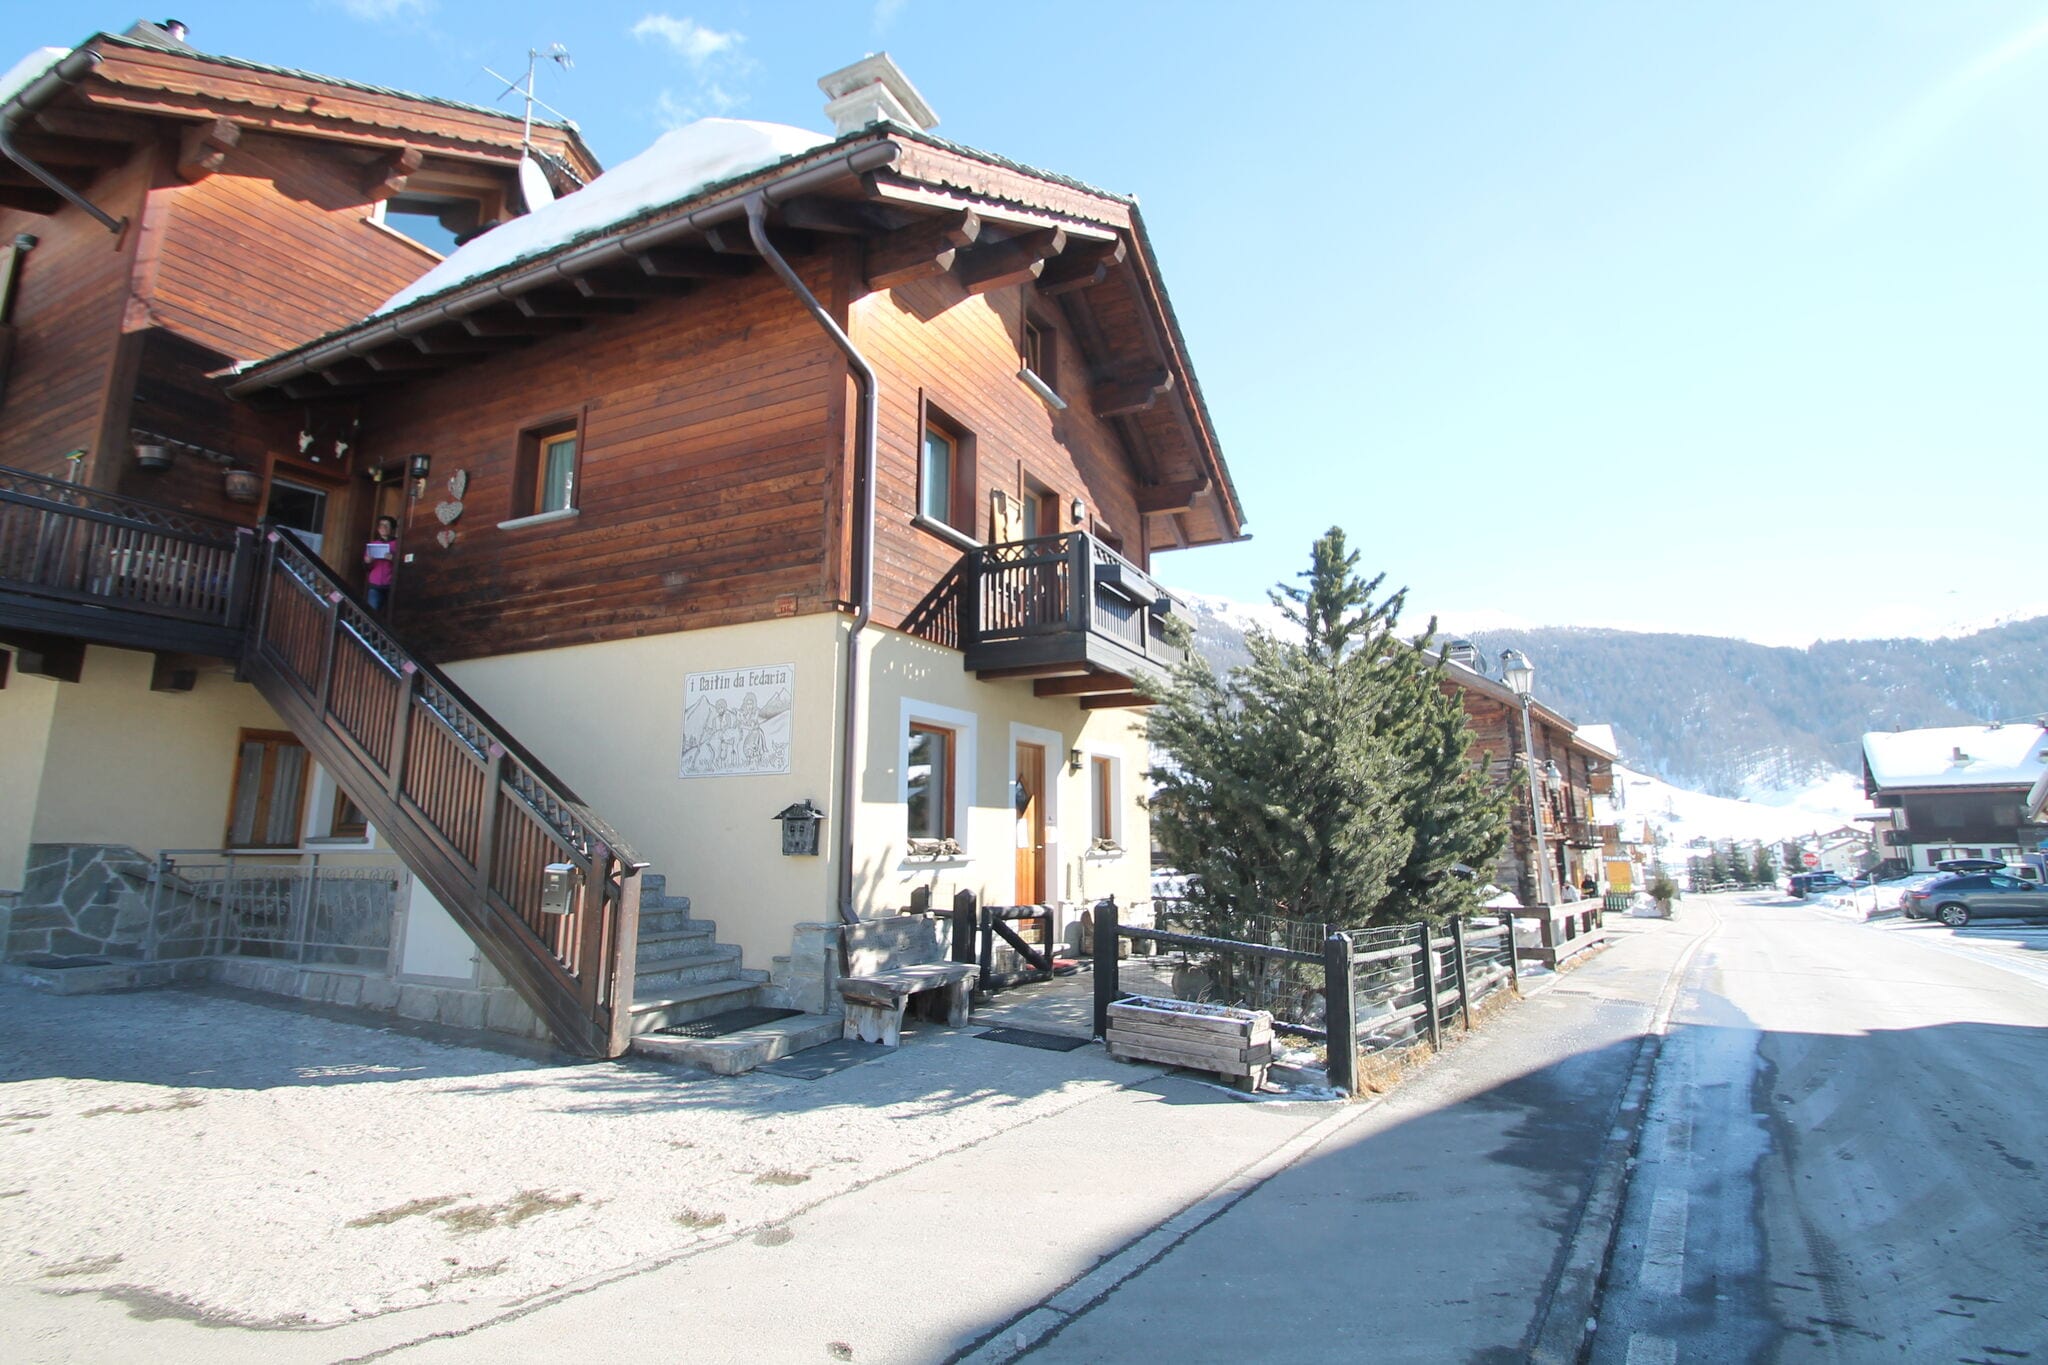 Appartement in Baita op slechts 200 meter afstand van de skiliften